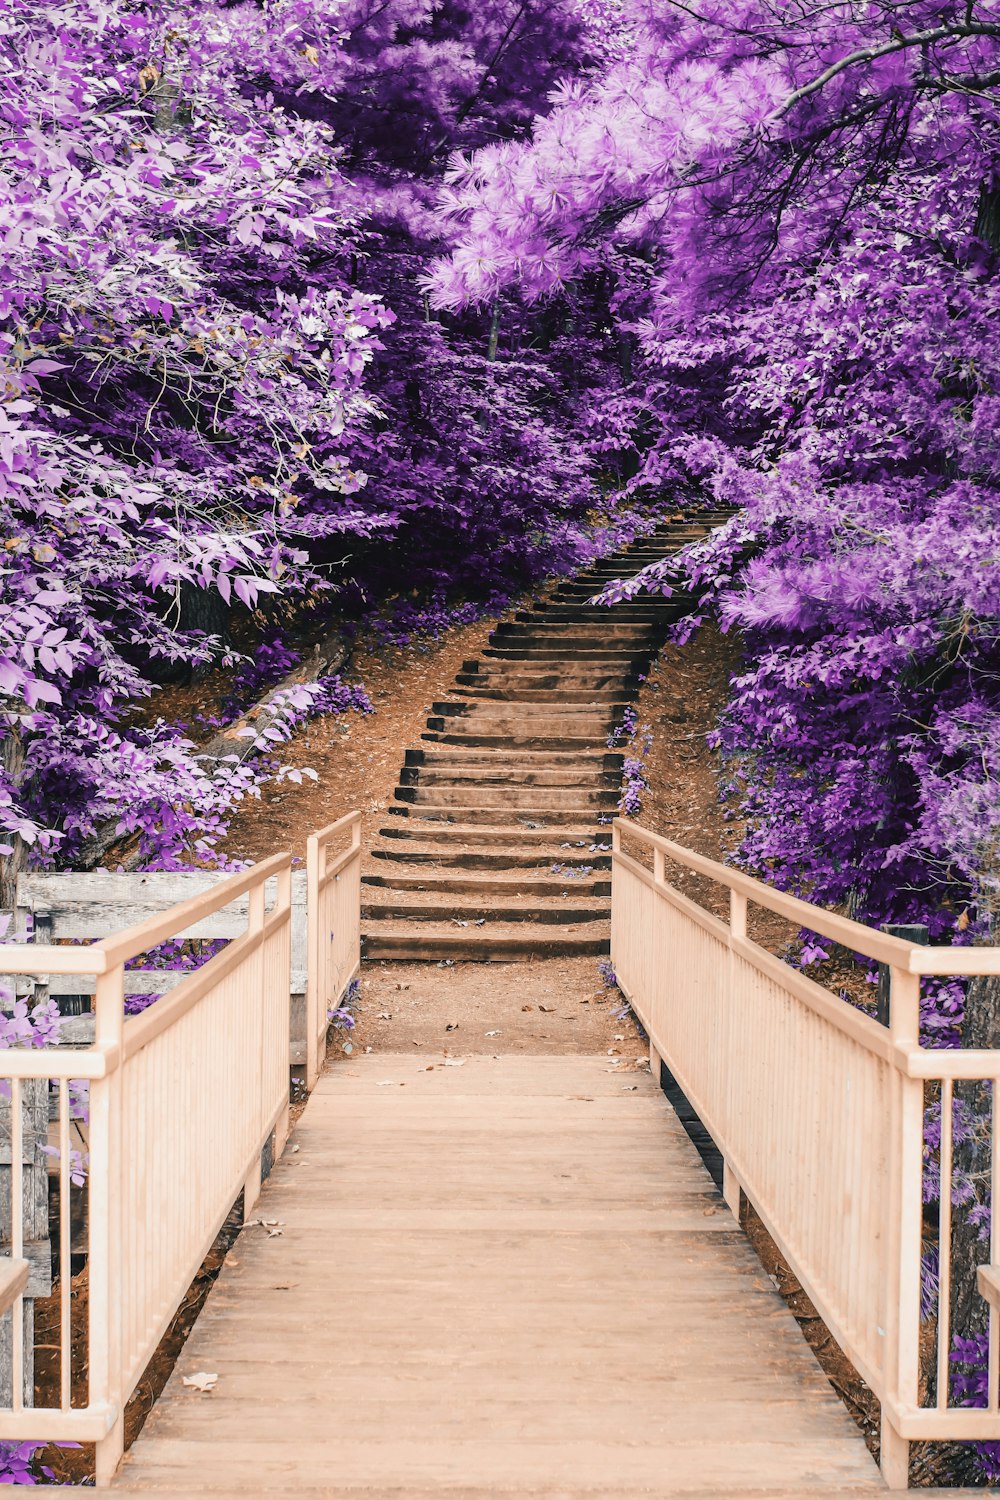 Puente de madera y escalera entre árboles morados